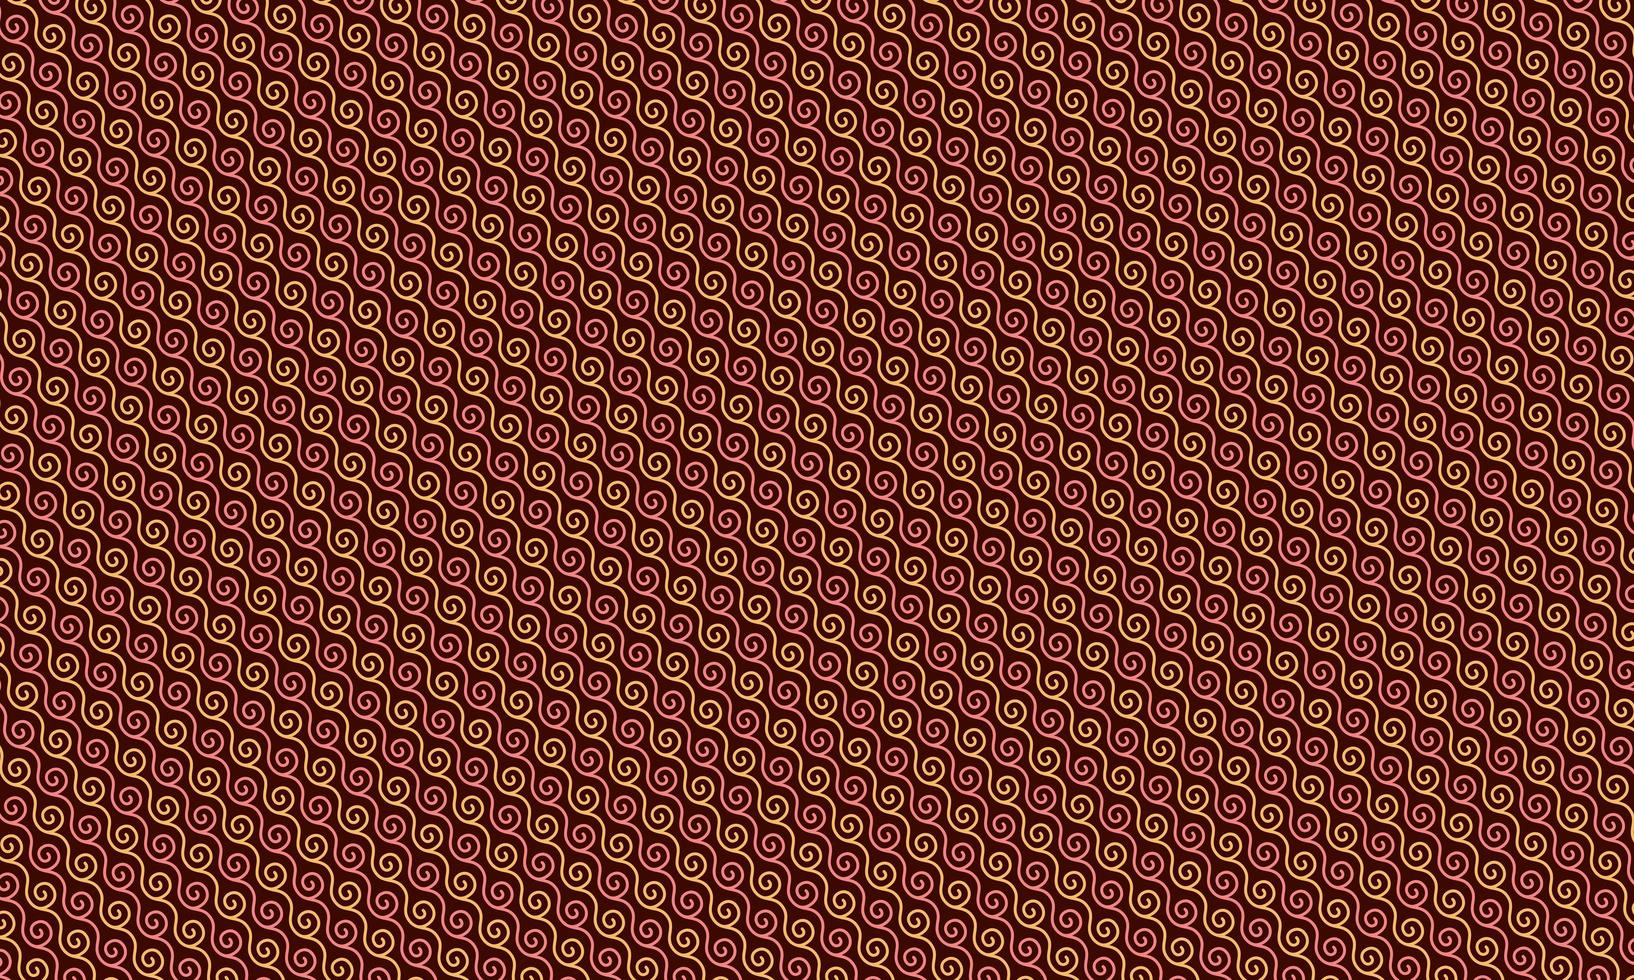 sömlös vävt linne textur bakgrund. fransk grå lin hampa fiber naturligt mönster. foto